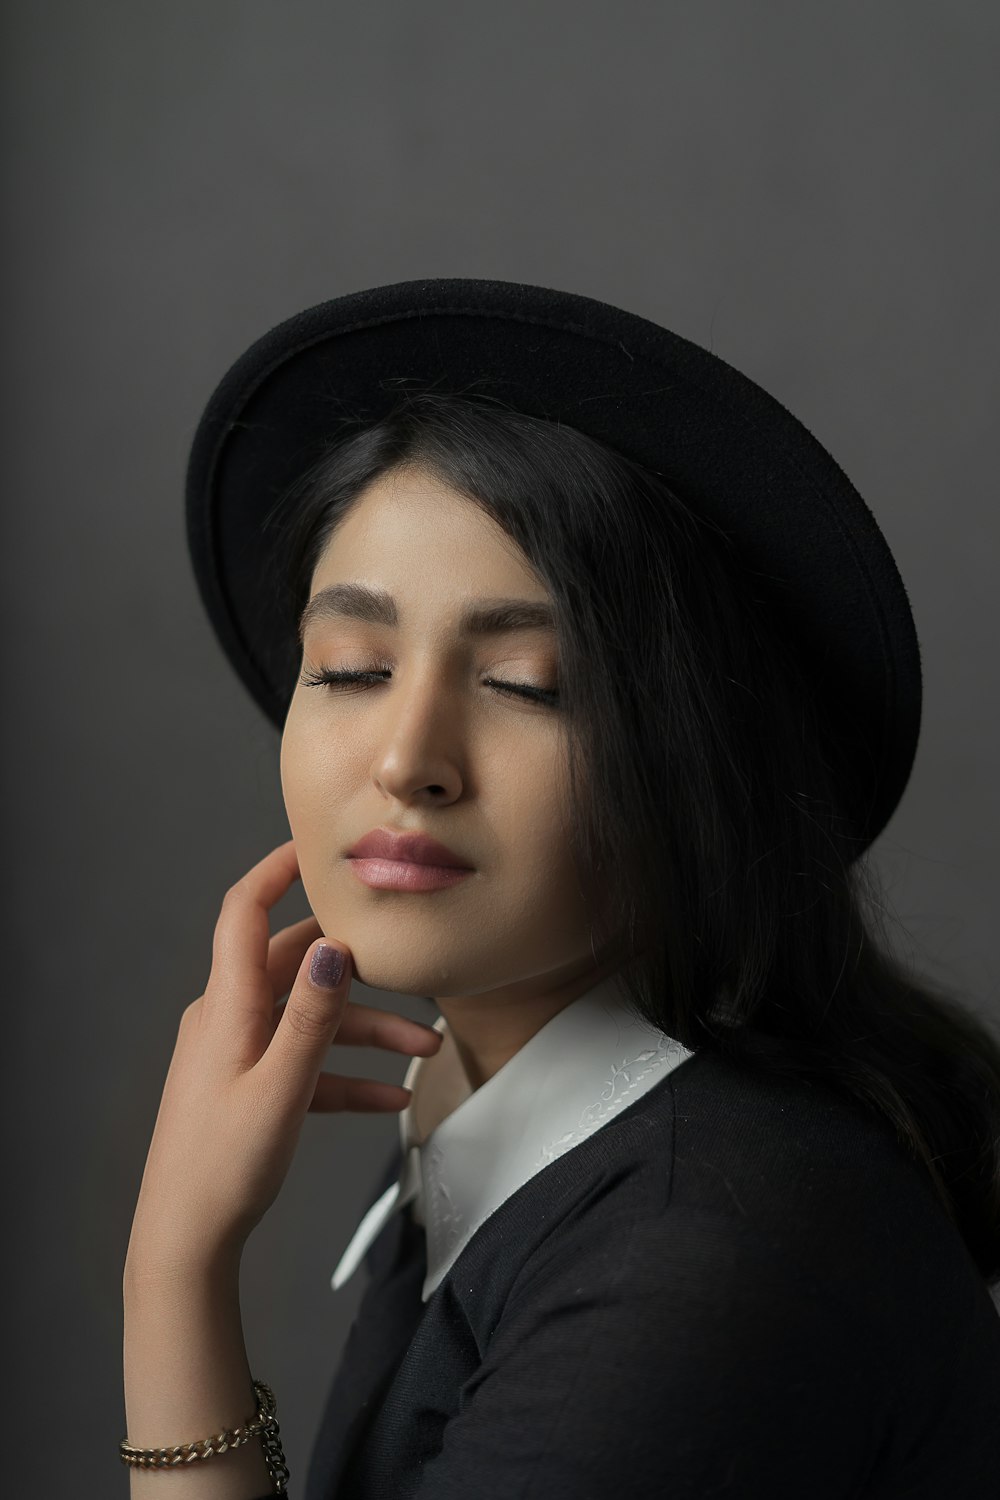 Una donna che indossa un cappello nero con gli occhi chiusi